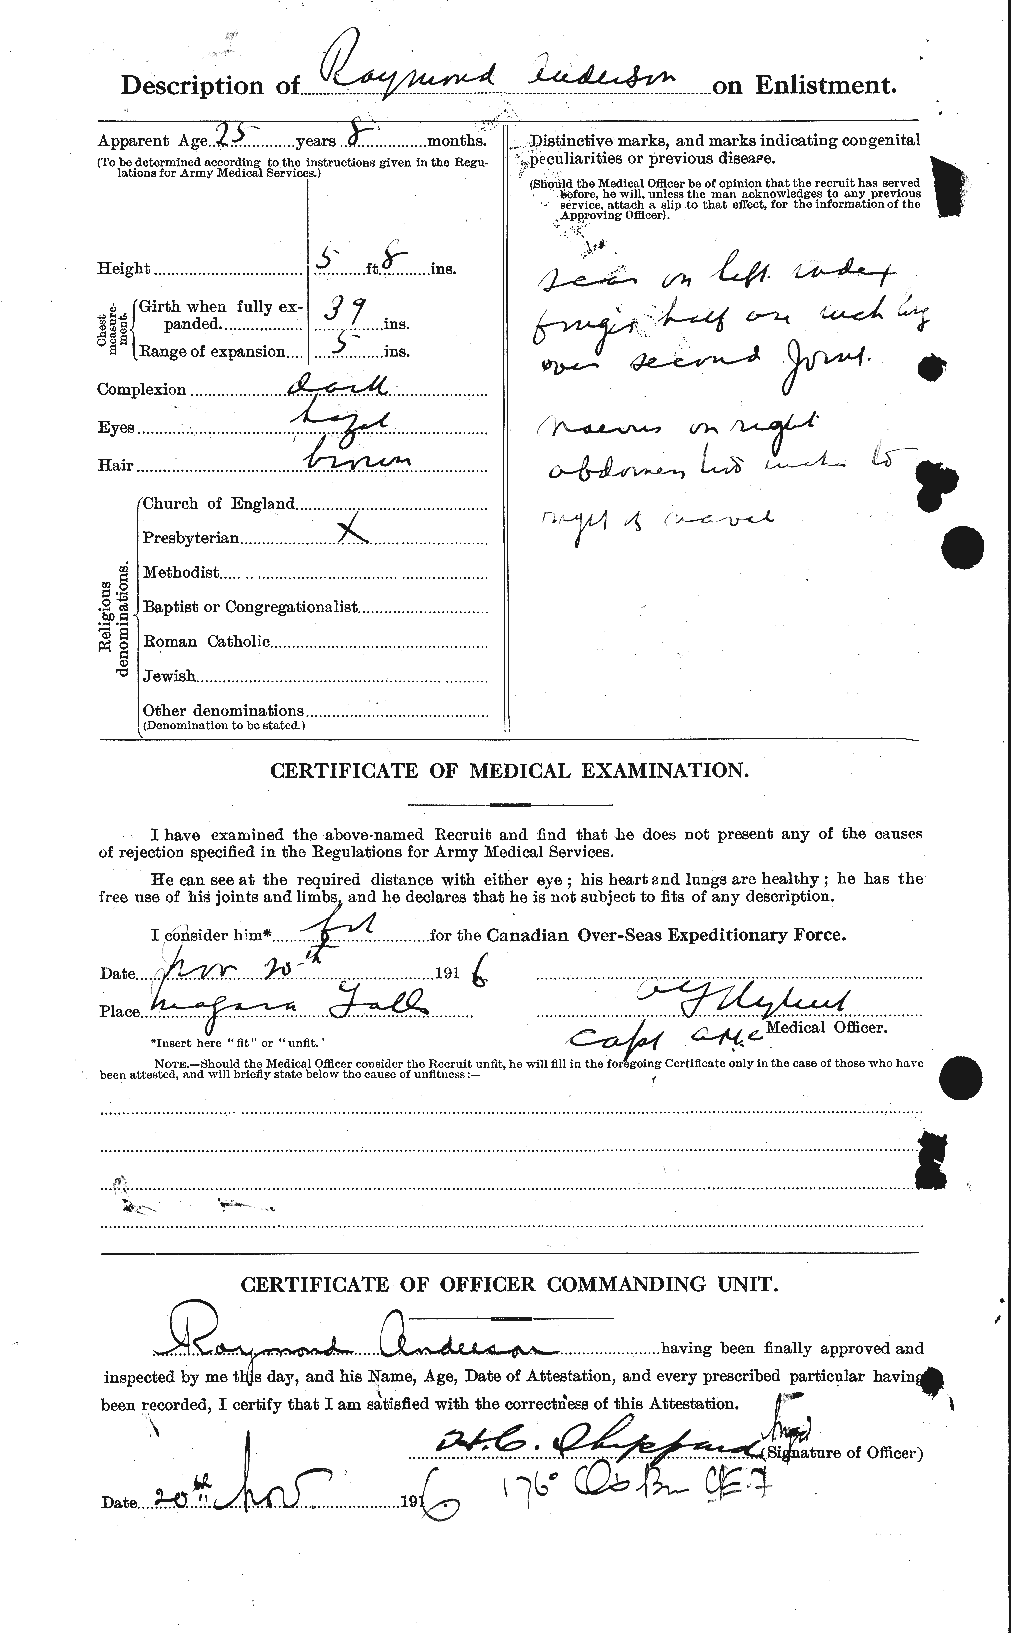 Dossiers du Personnel de la Première Guerre mondiale - CEC 207330b